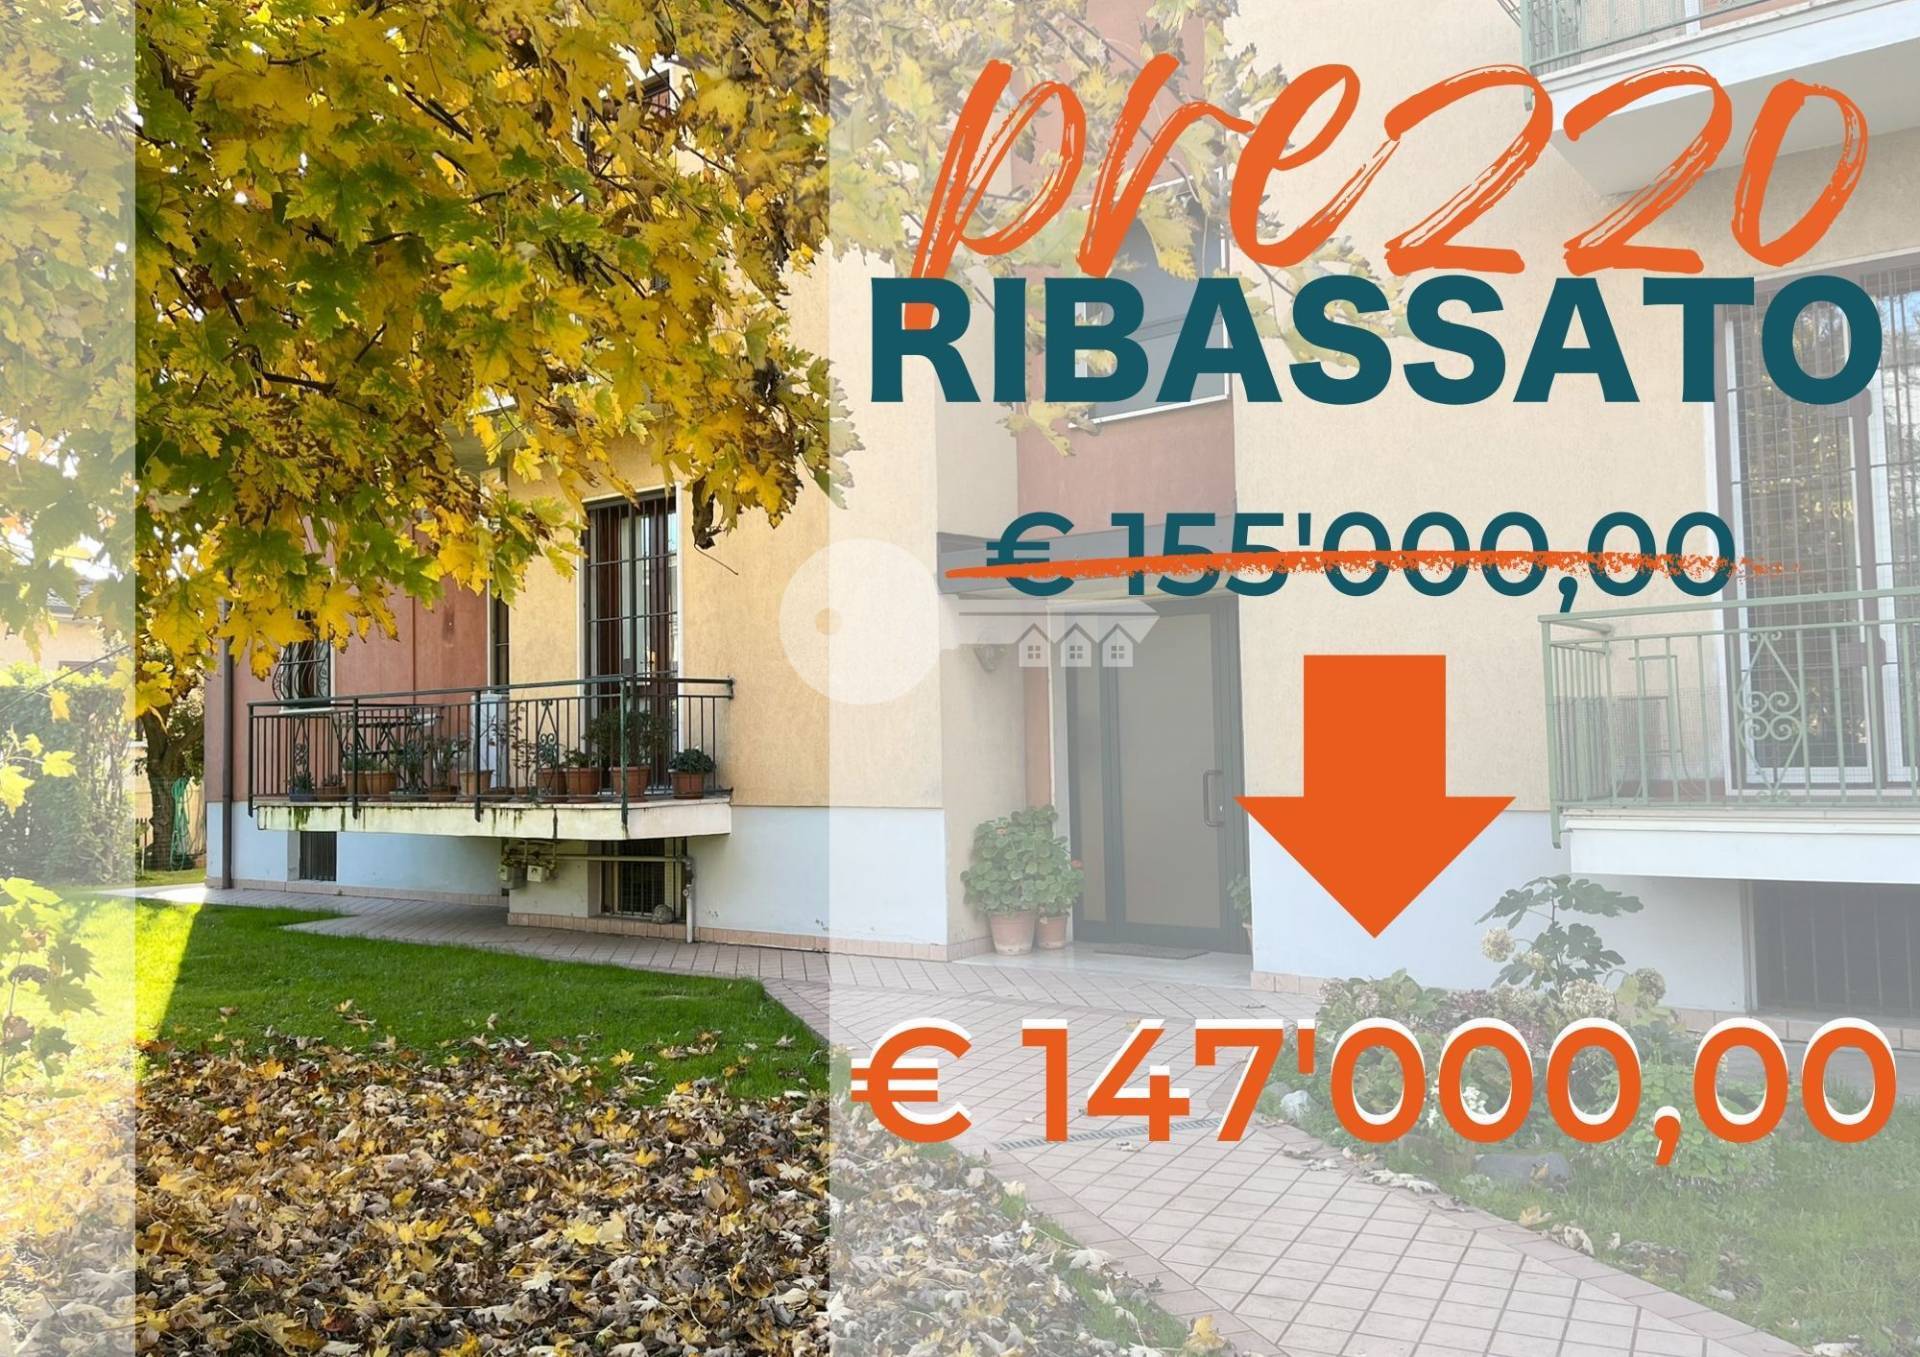 Appartamento in vendita a Flero, 3 locali, prezzo € 147.000 | PortaleAgenzieImmobiliari.it